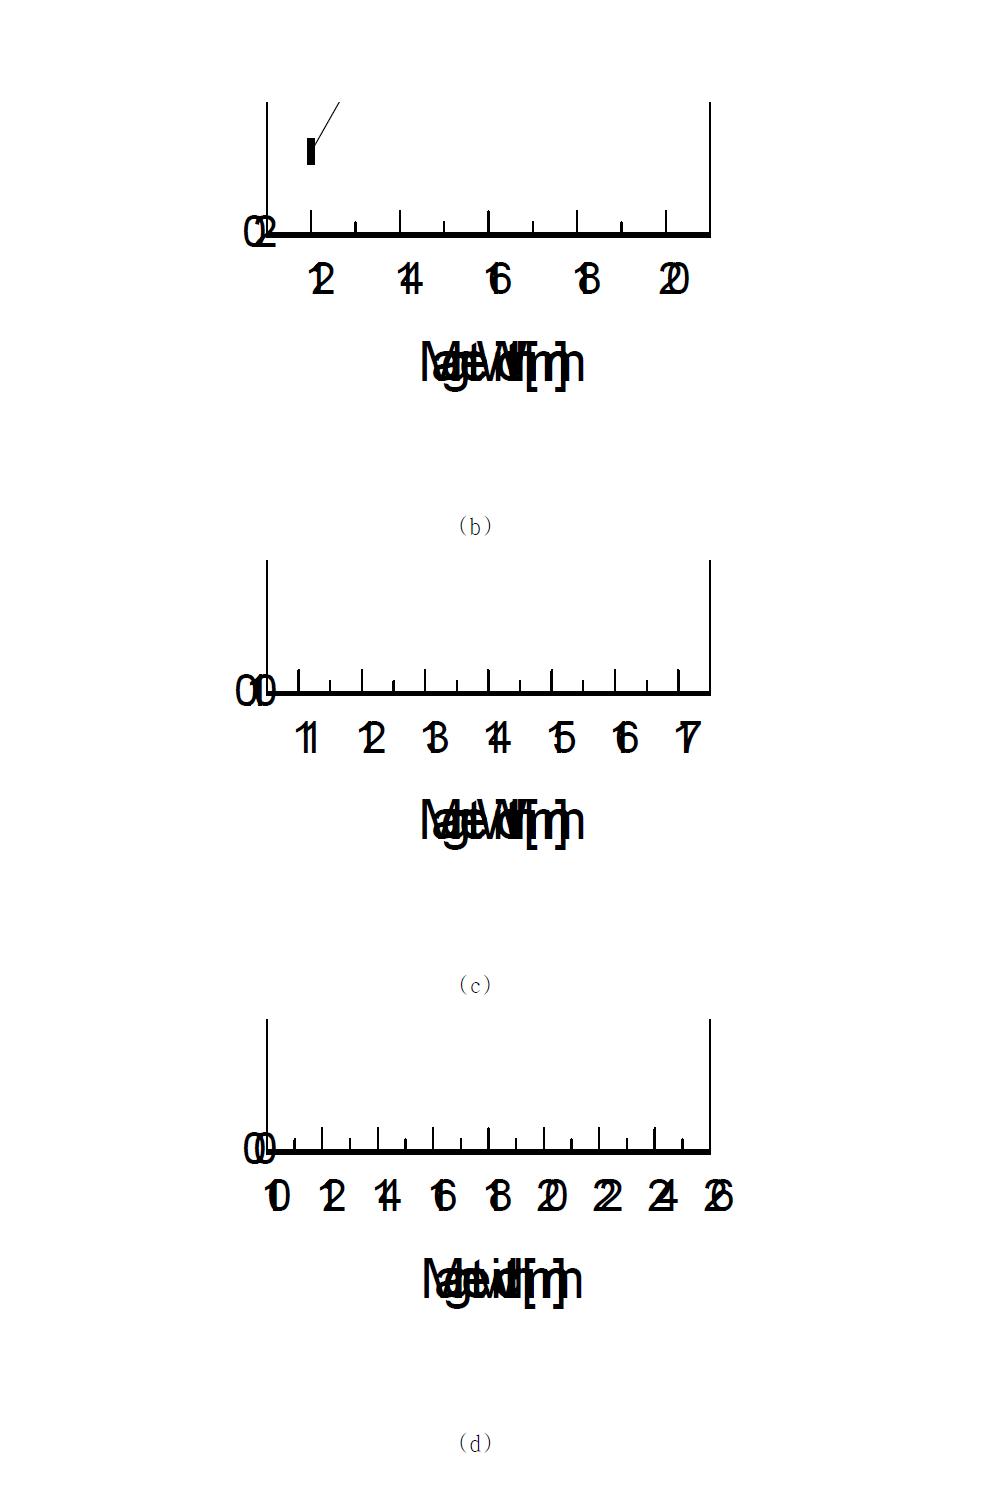 다양한 극수 모델에 대한 자석폭에 따른 토크리플 특성: (a) 4극, (b) 6극 , (c) 8극 및 (d) 각 극수에 대한 비교.